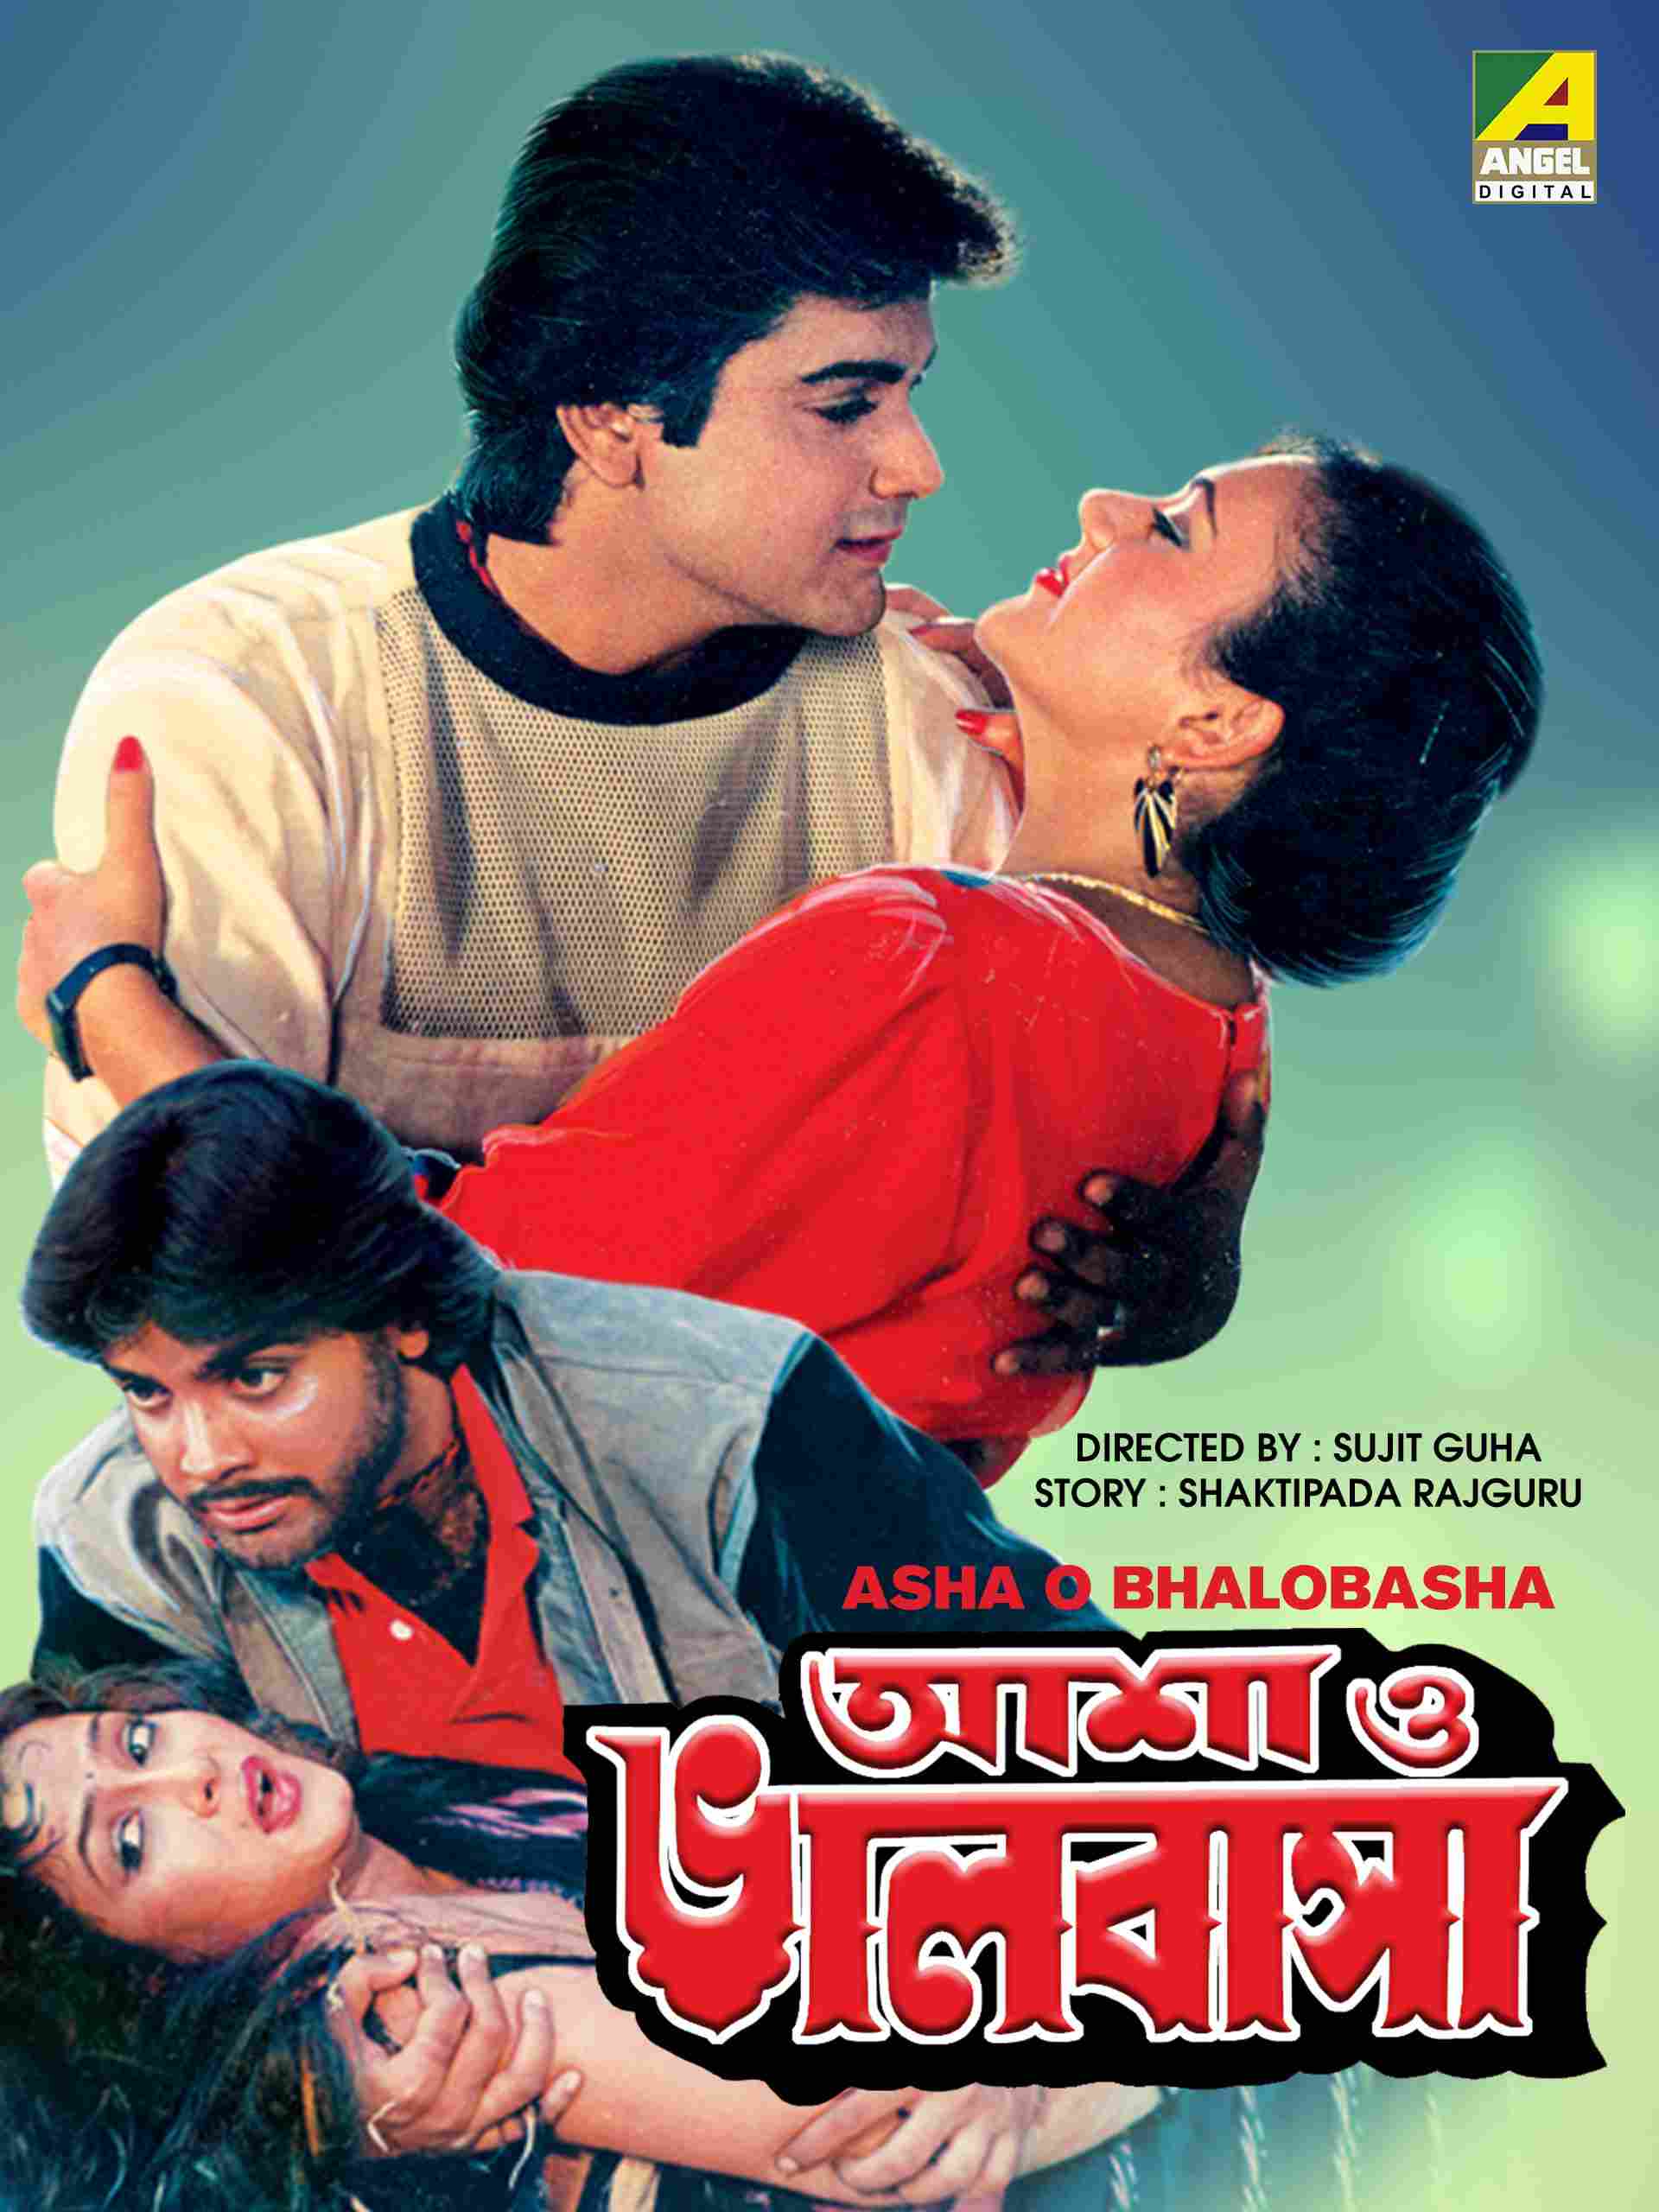 Deepika Chikhalia's Bengali Film Asha-O-Bhalobasha